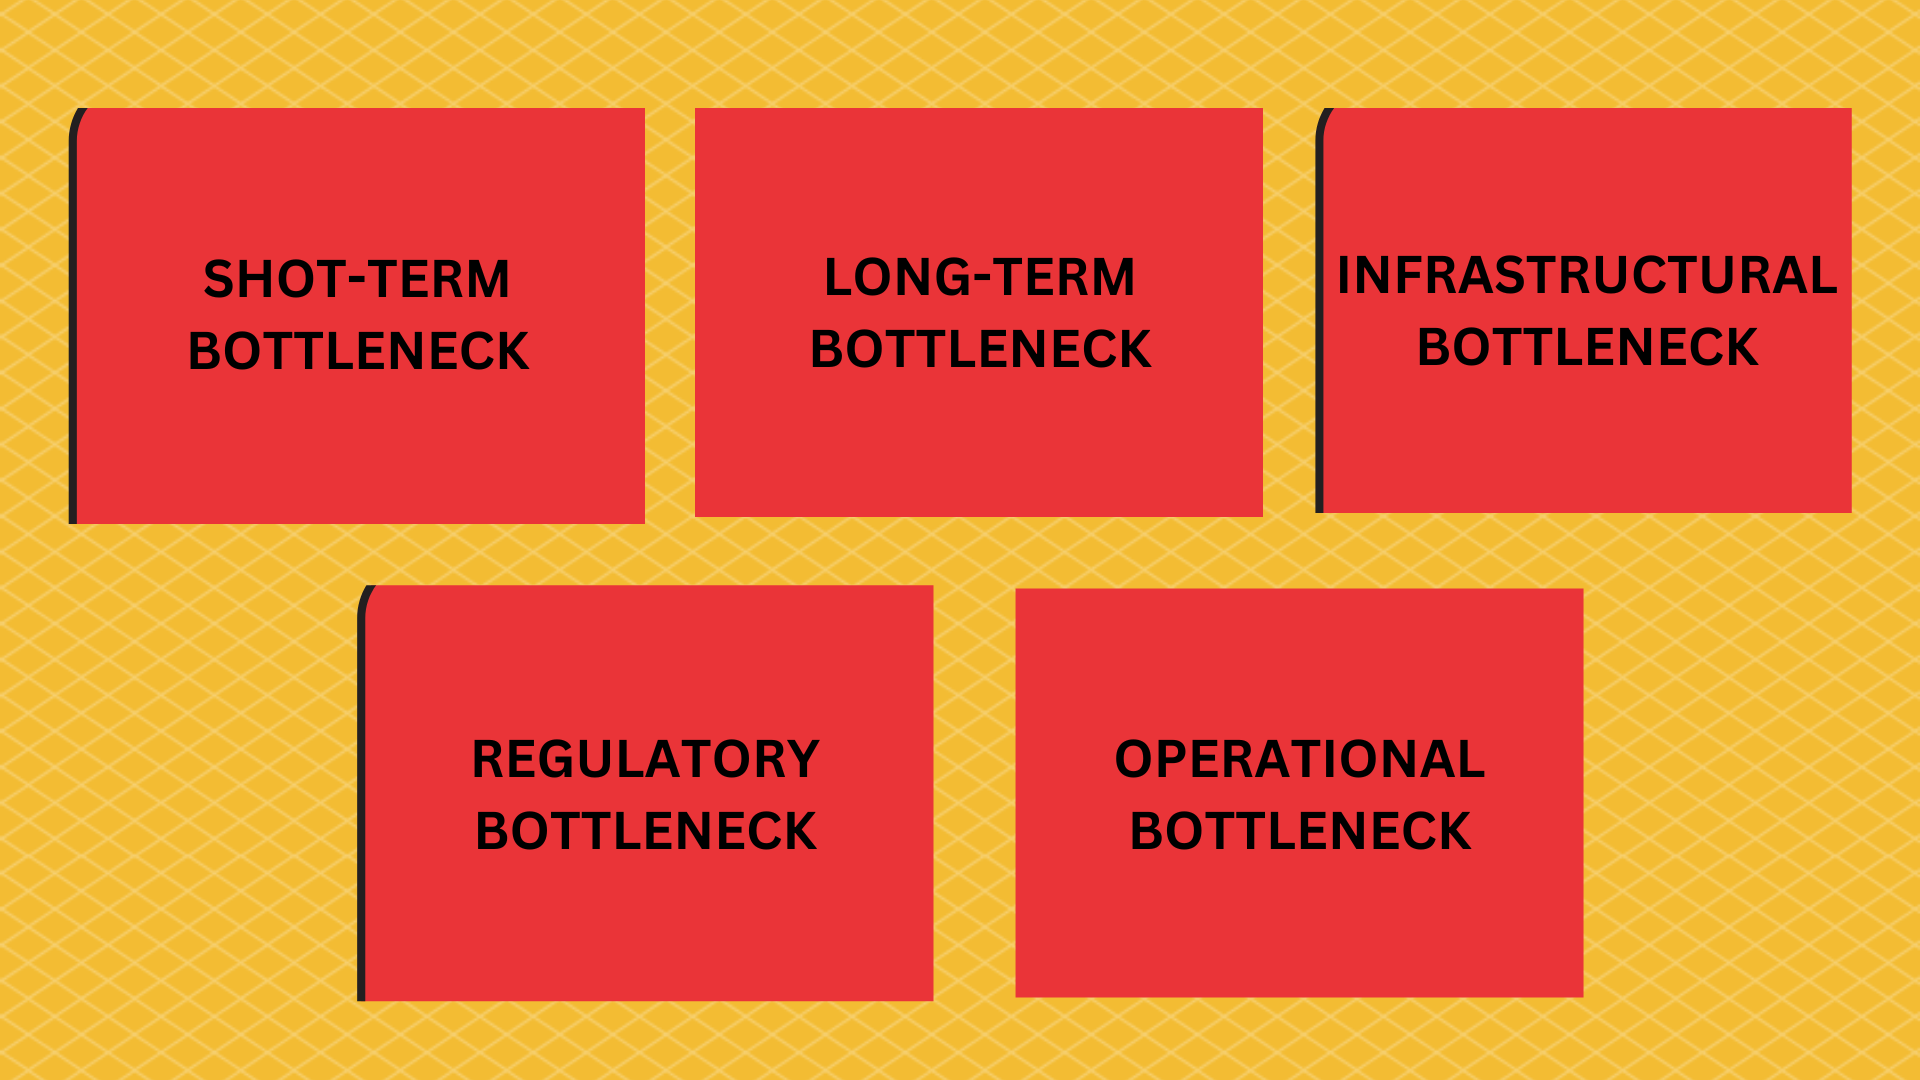 Types of Bottlenecks